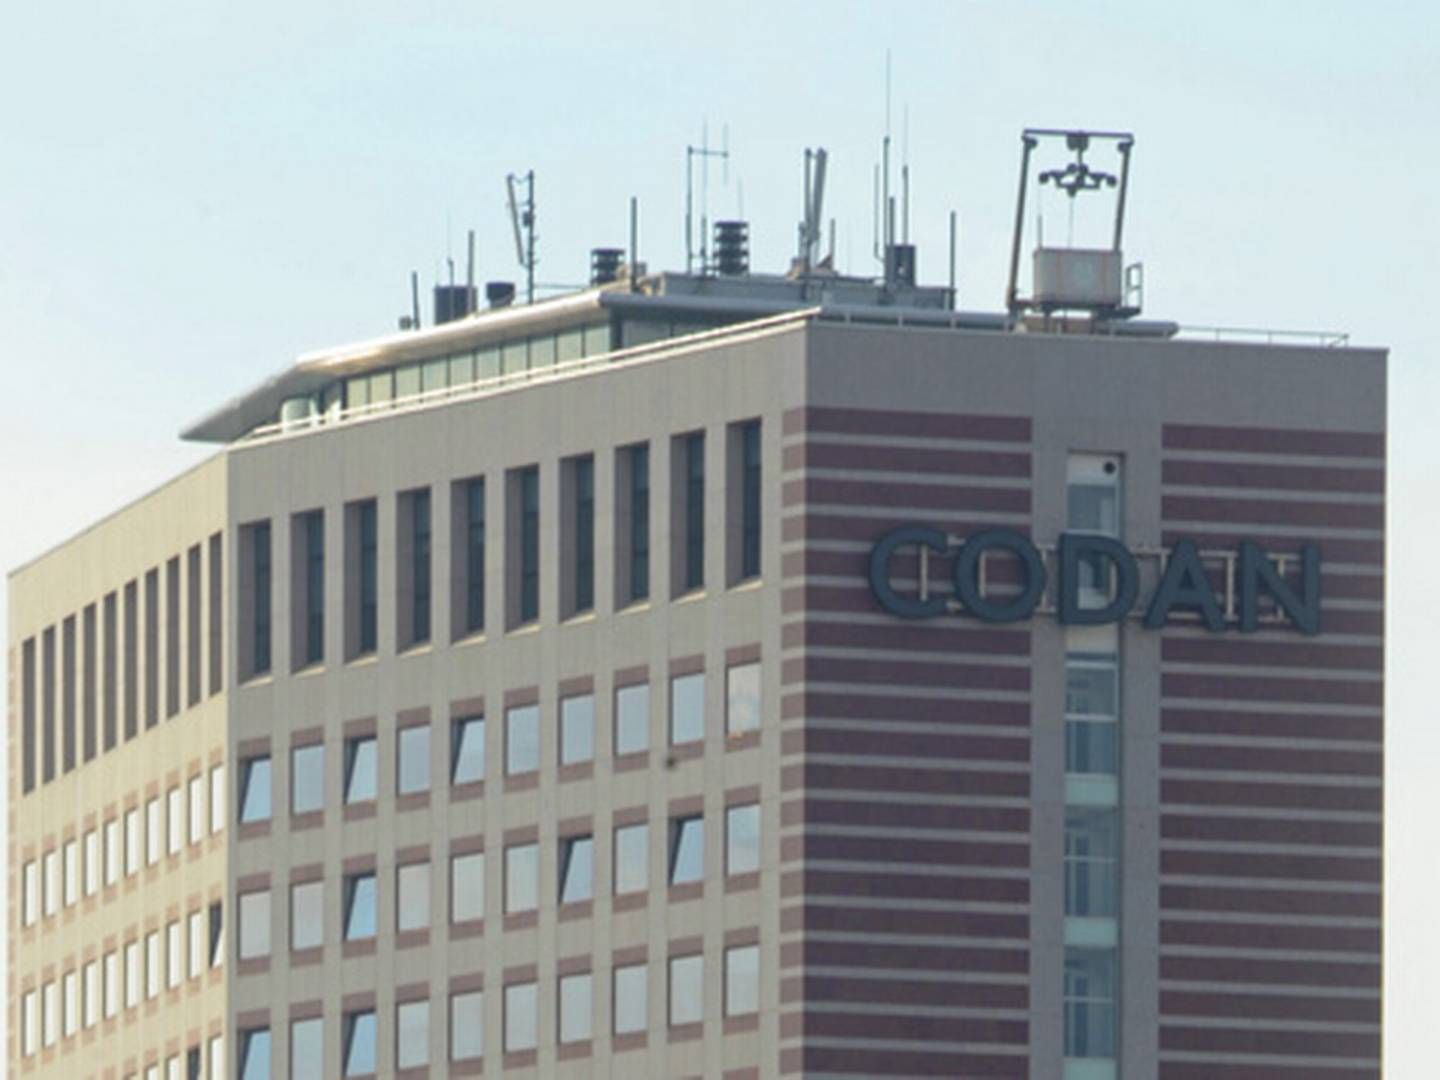 Codans ejere, britiske RSA, melder om begyndende forbedringer på det danske marked. | Foto: Codan presseafdeling